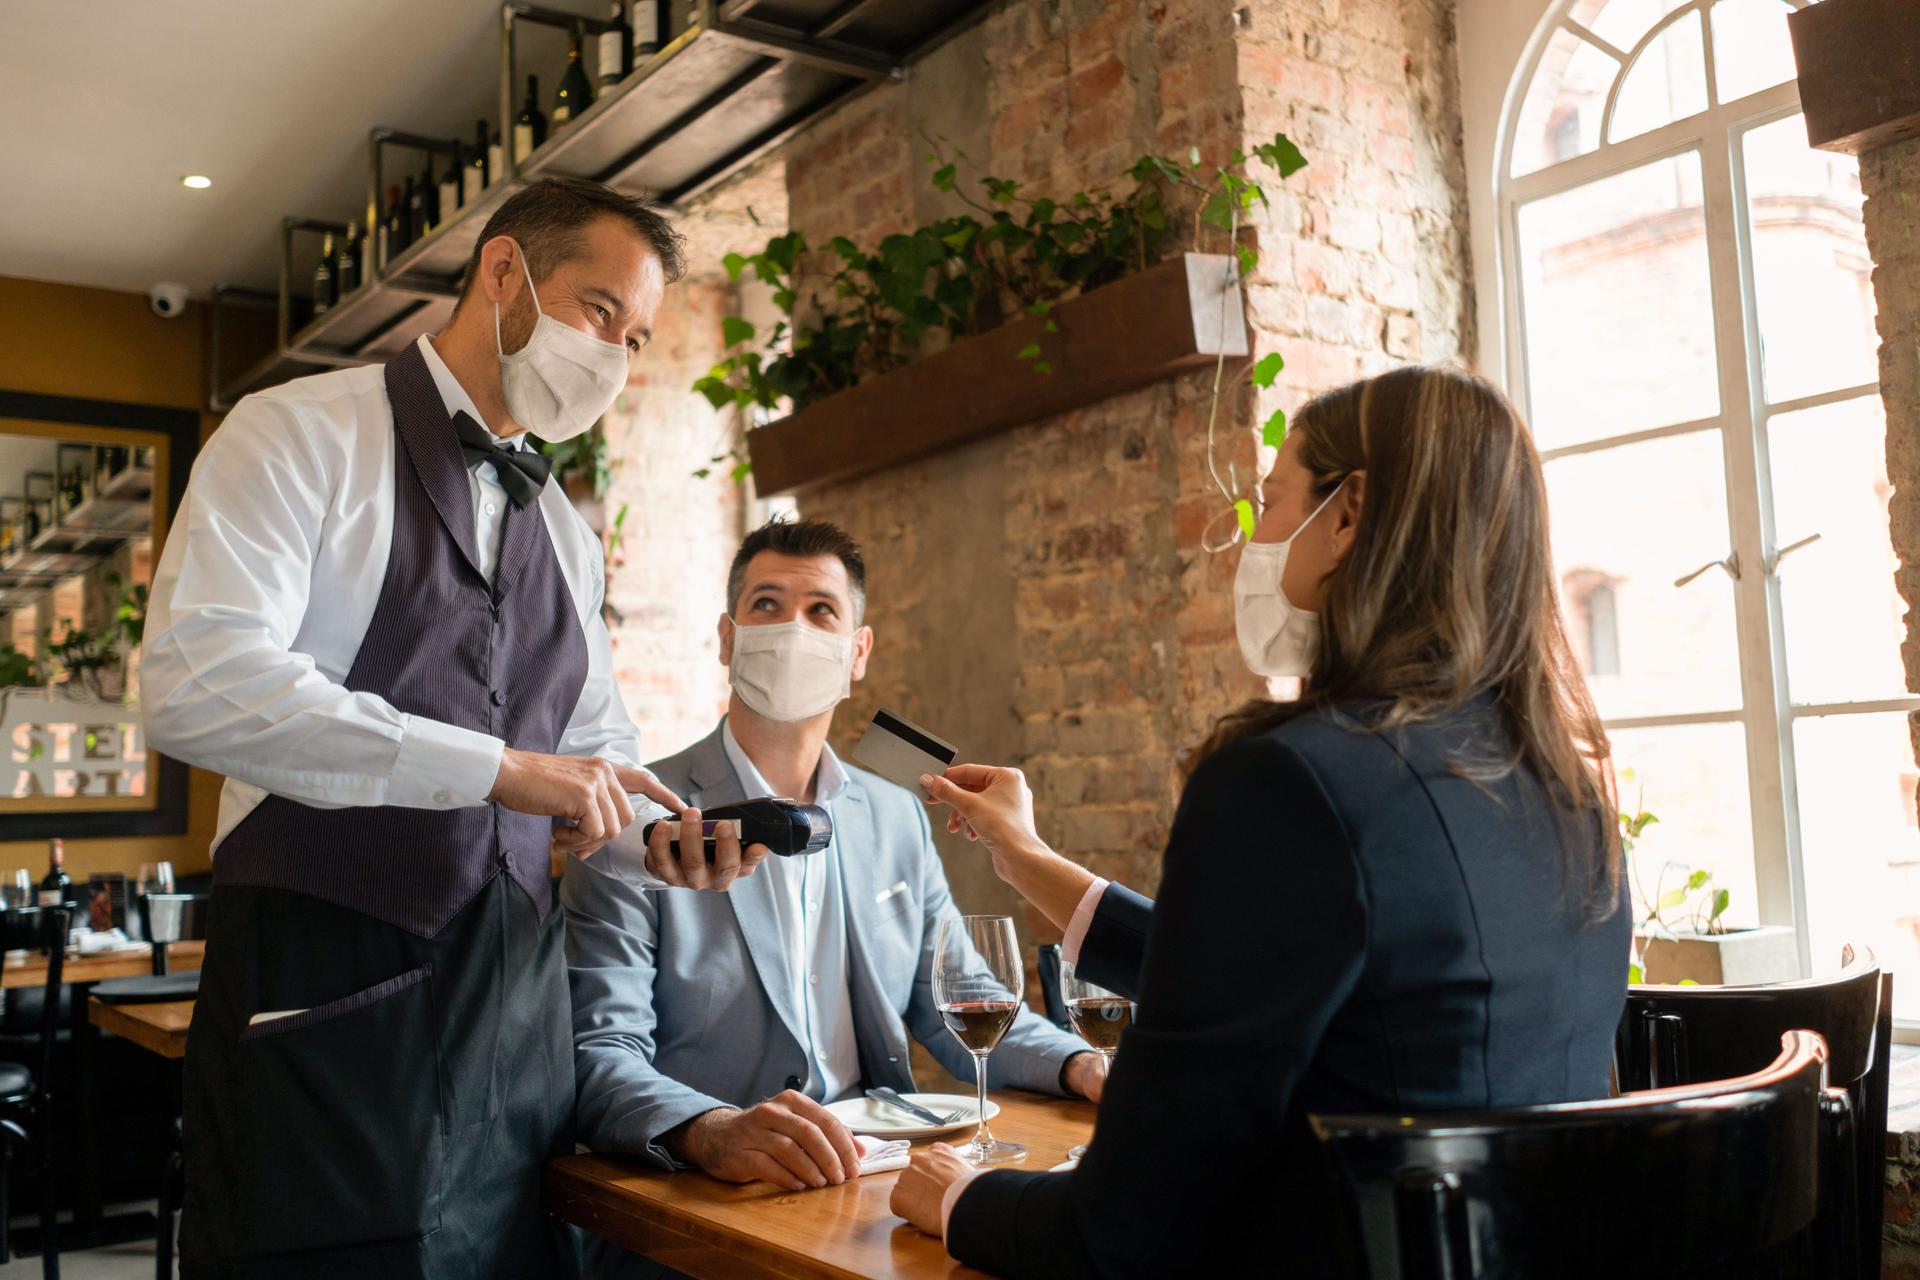 Eine Frau und ein Mann sitzen in einem Restaurant an einem Tisch. Die Frau reicht dem Kellner, der am Tisch steht, eine Bankkarte. Alle tragen eine Mund-Nasen Bedeckung.